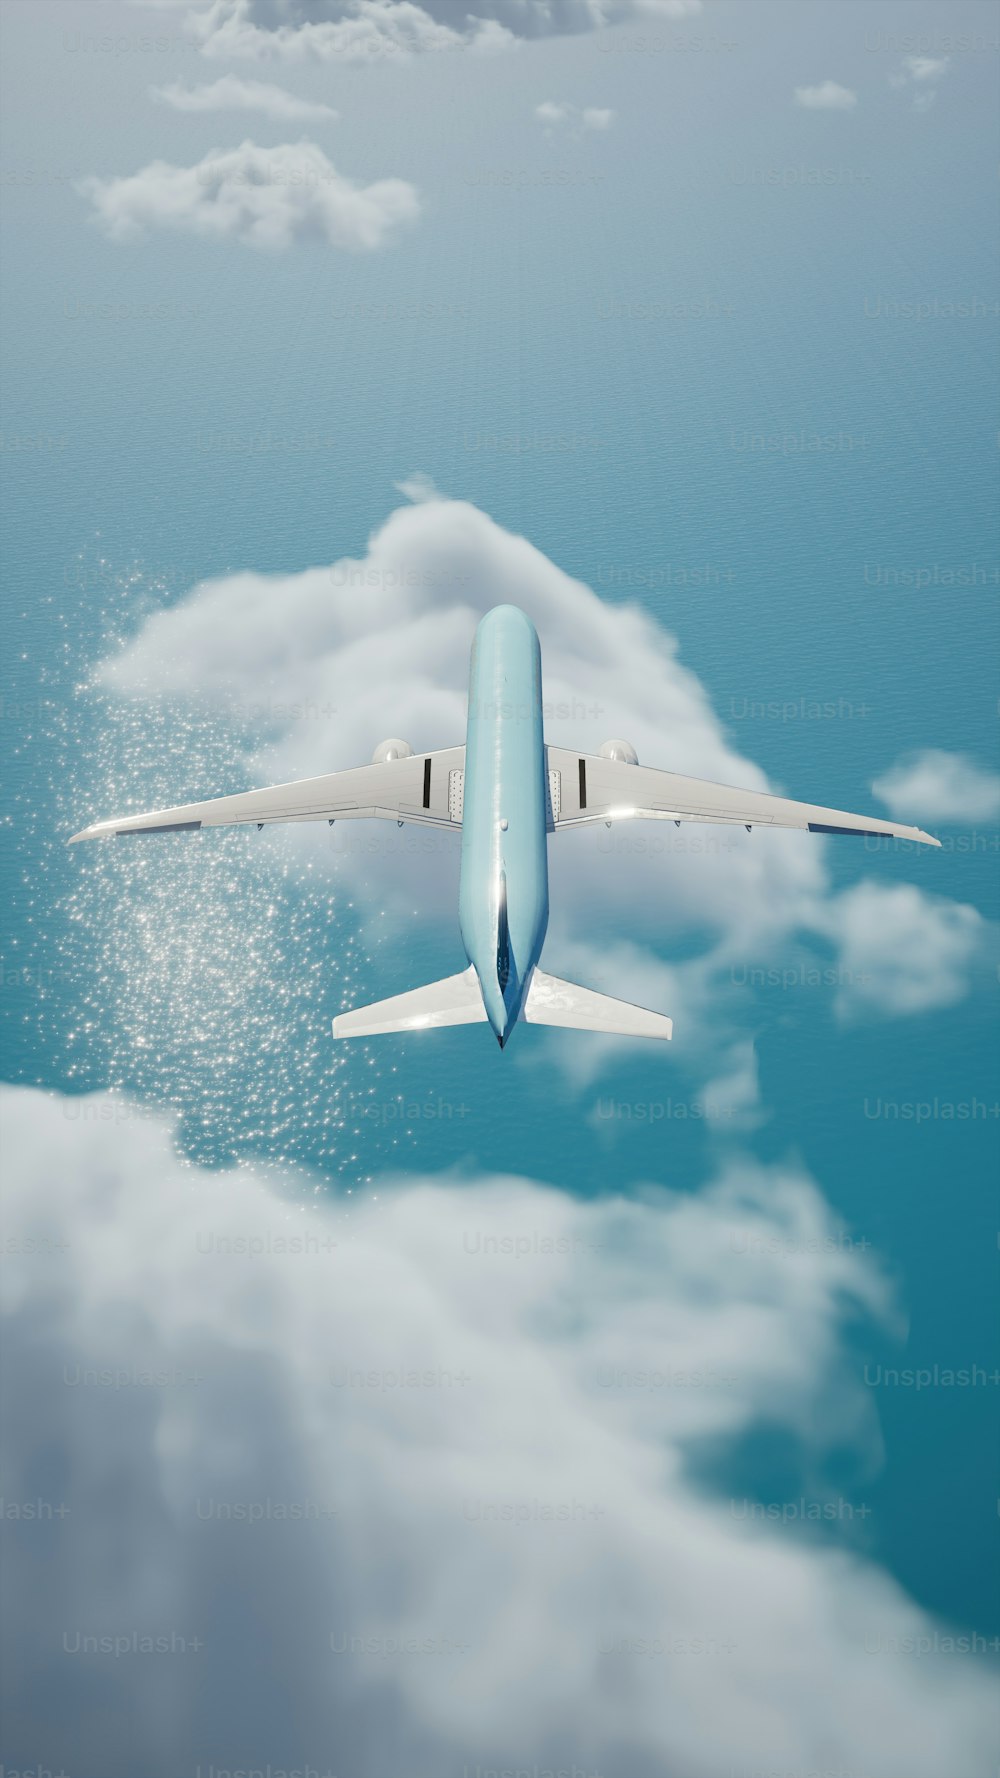 Un avion bleu et blanc volant dans le ciel